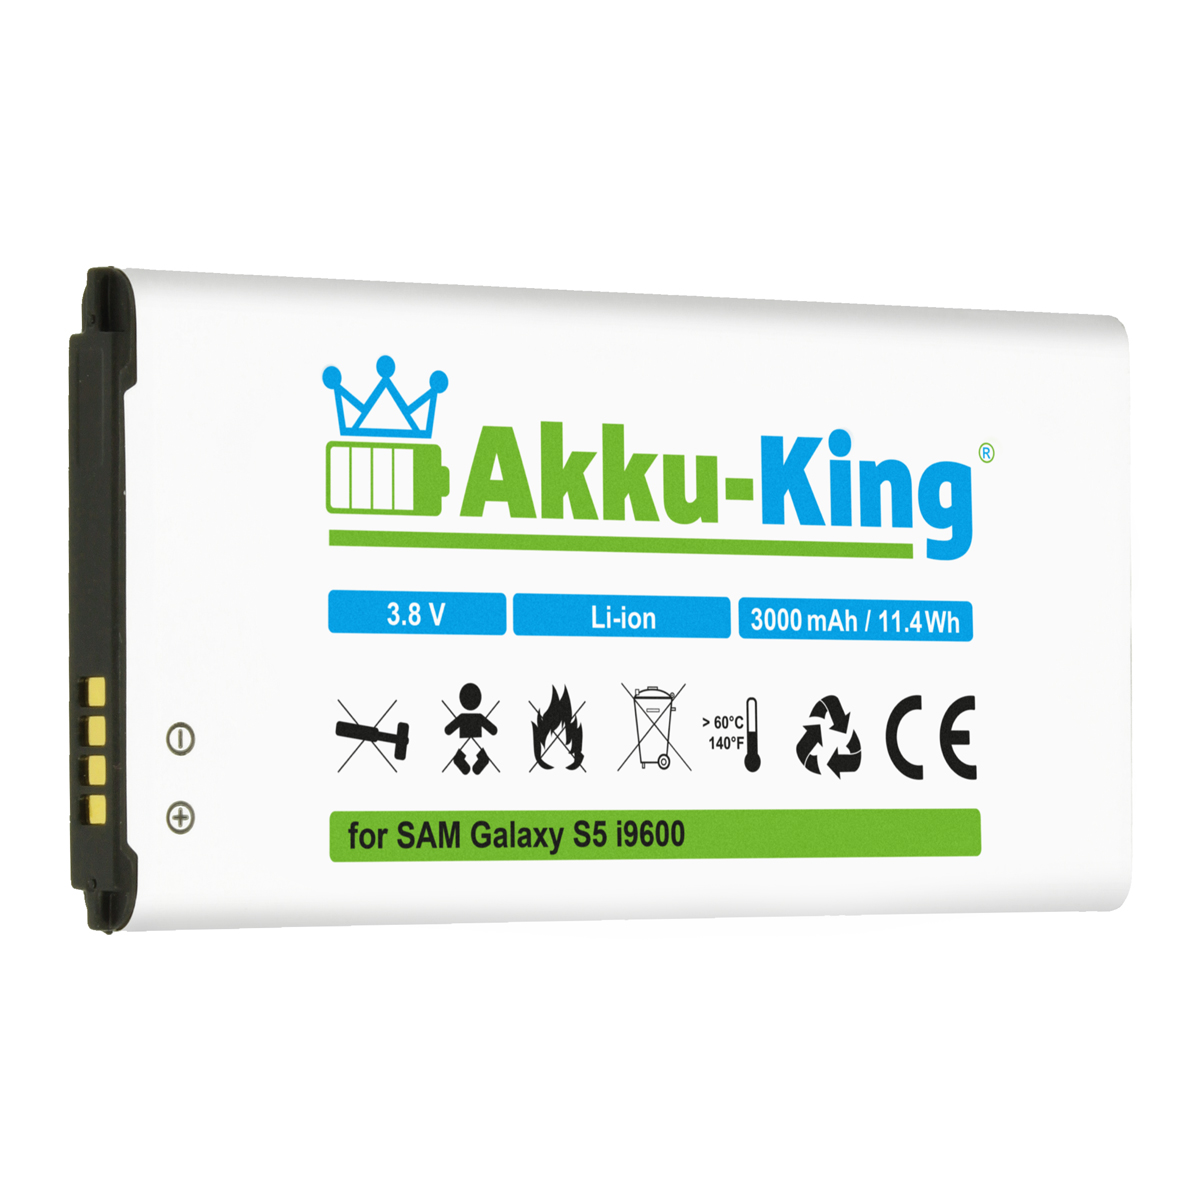 Akku EB-B900BE Samsung 3.8 kompatibel mit 3000mAh Handy-Akku, AKKU-KING Li-Ion Volt,